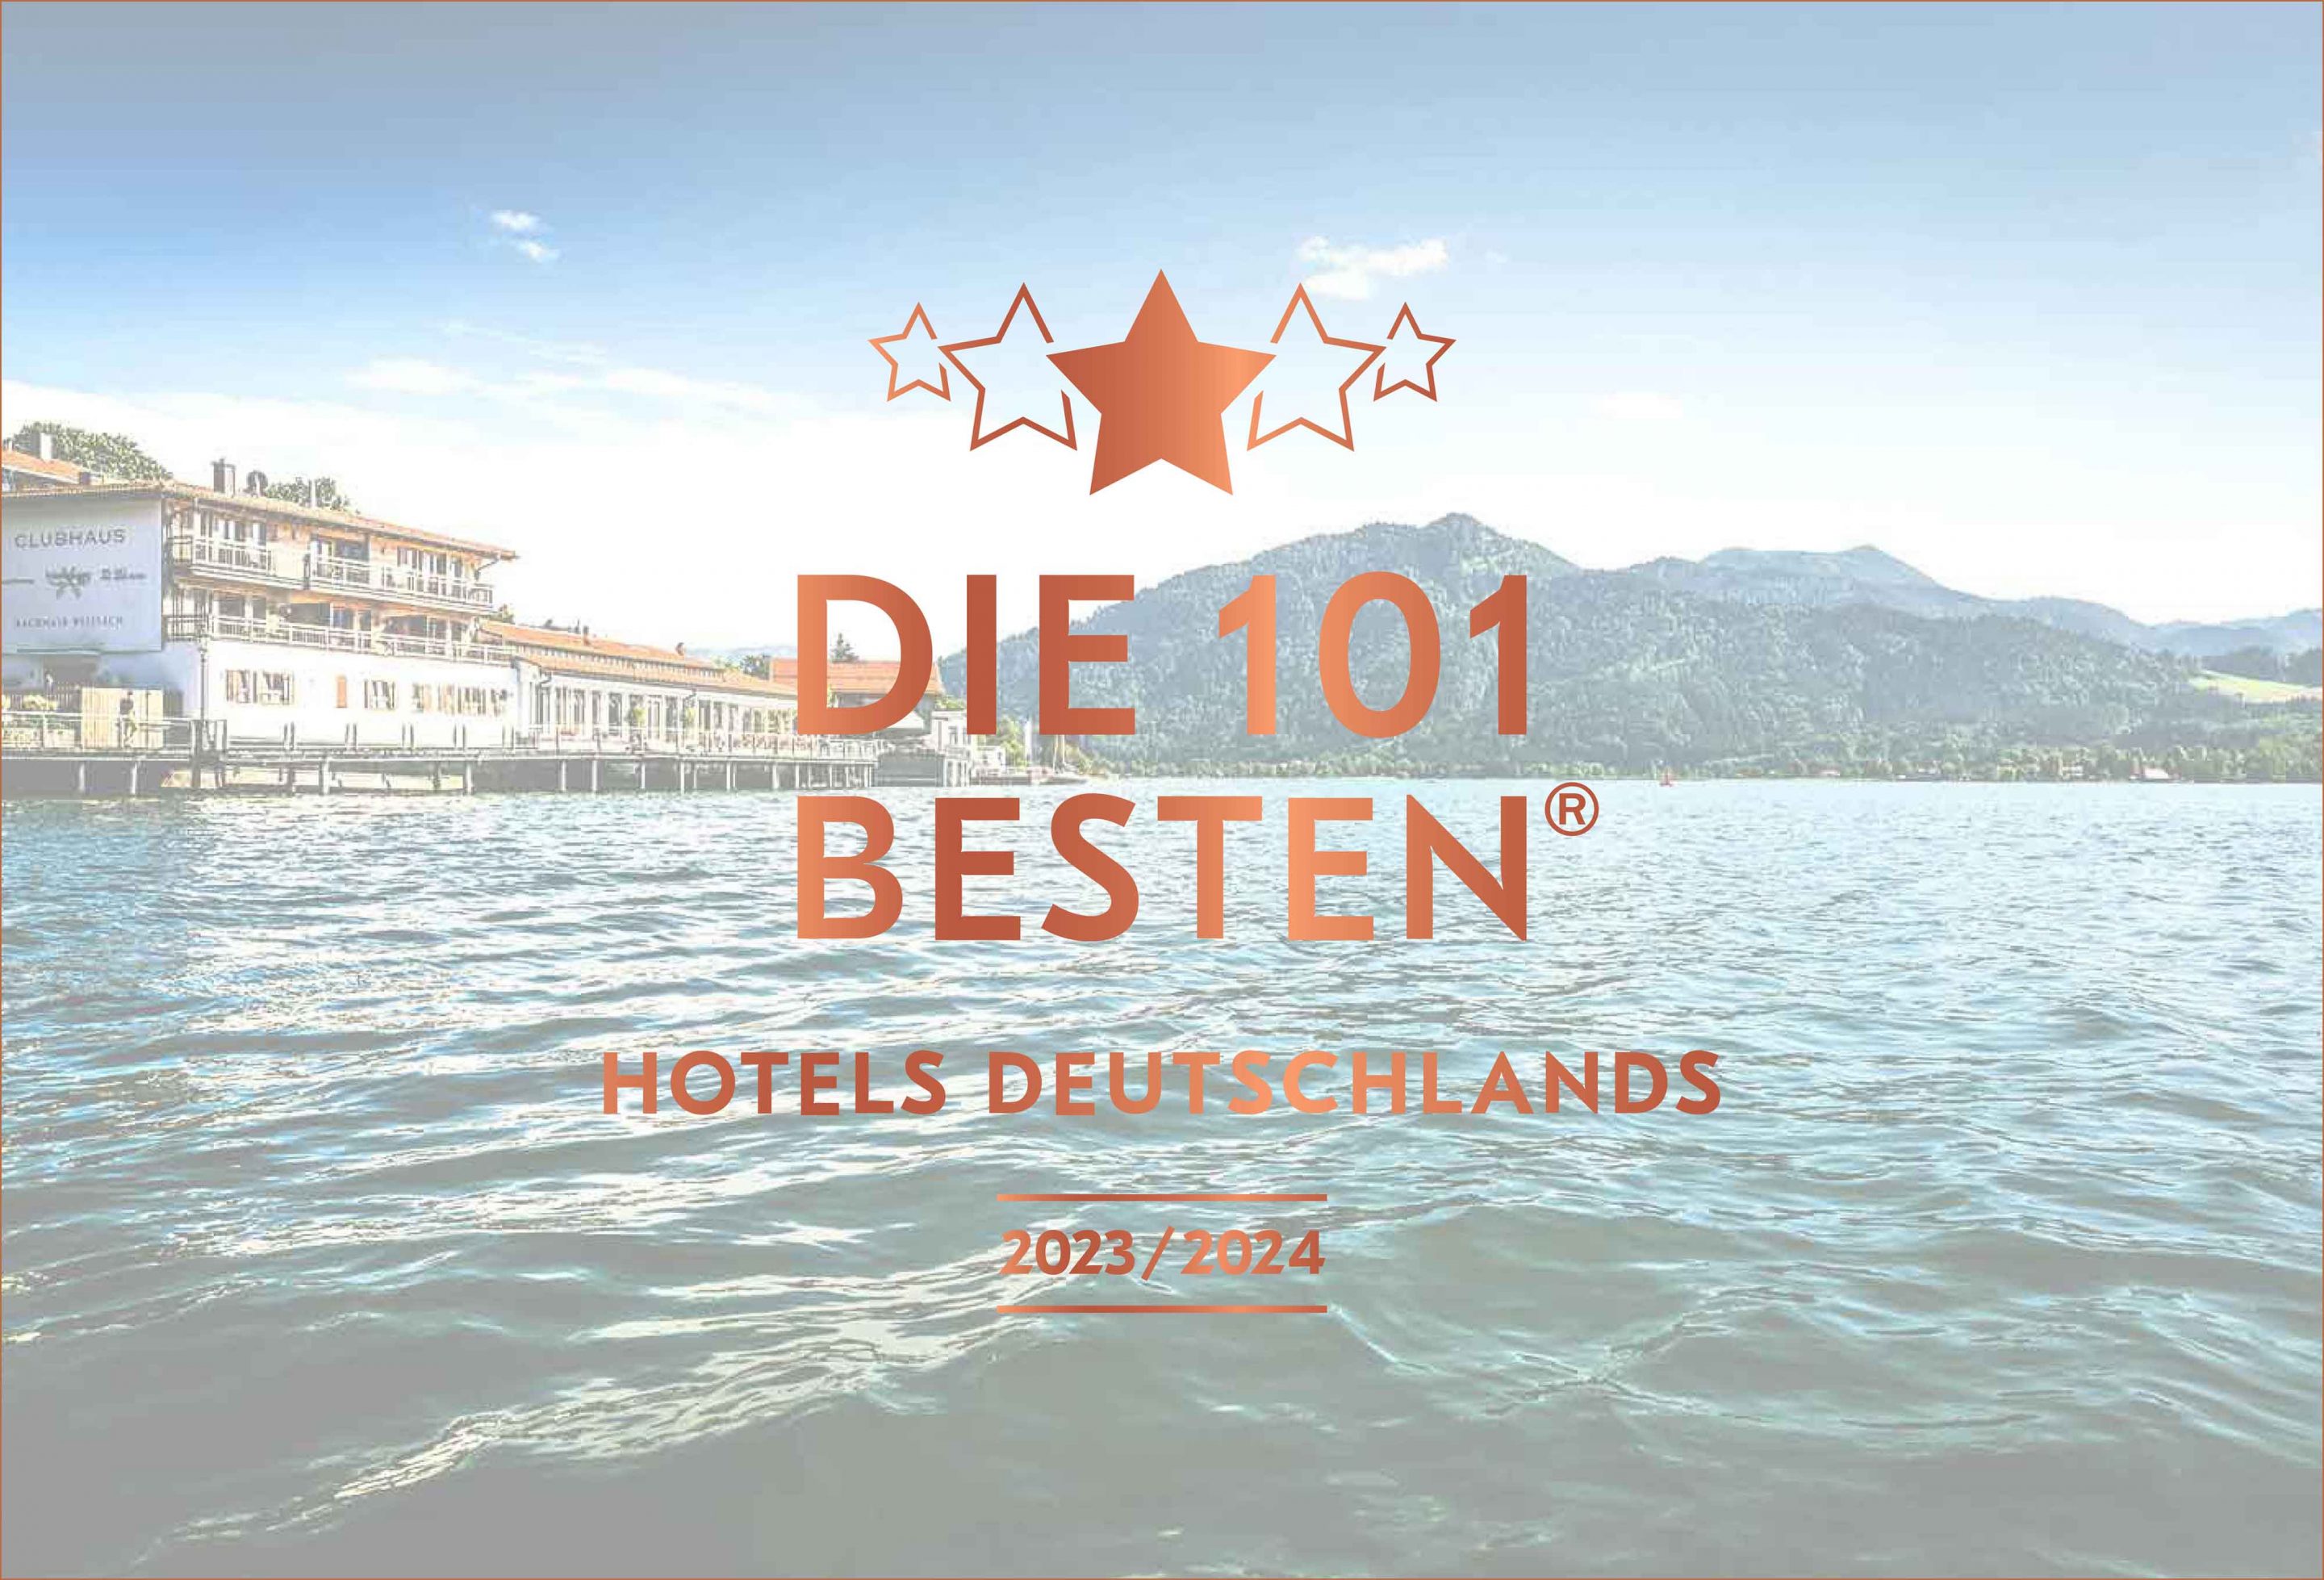 Die 101 Besten Hotels Deutschlands, Carsten K. Rath, Par Excellence, tn hotel consulting, hotel pr, tomas niederberghaus